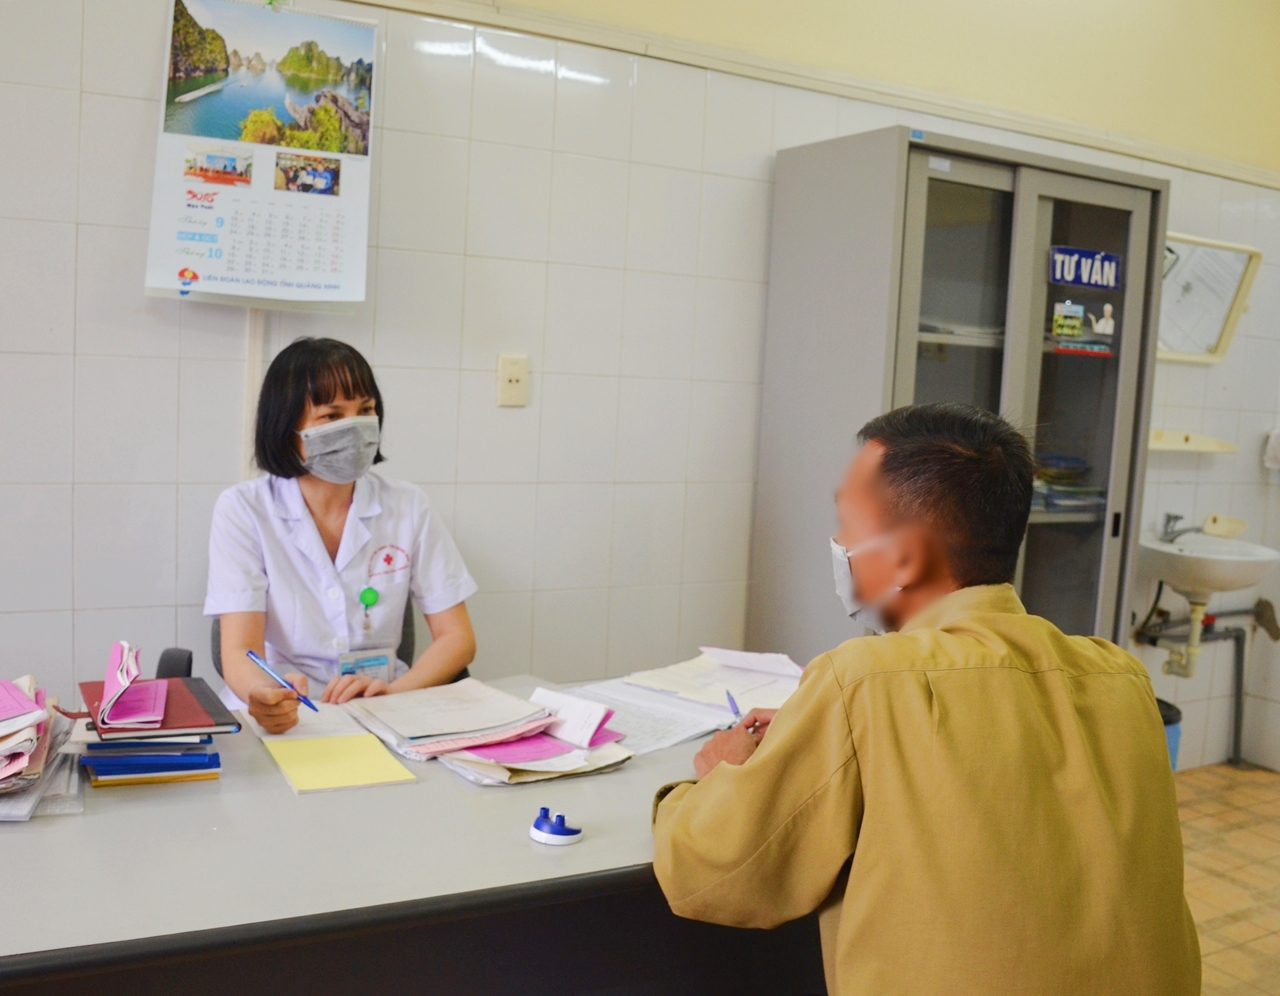 Bác sĩ đang tư vấn cho người bệnh nhiễm HIV sử dụng thuốc ARV tại Bệnh viện Đa khoa tỉnh. Ảnh: Nguyễn Hoa.